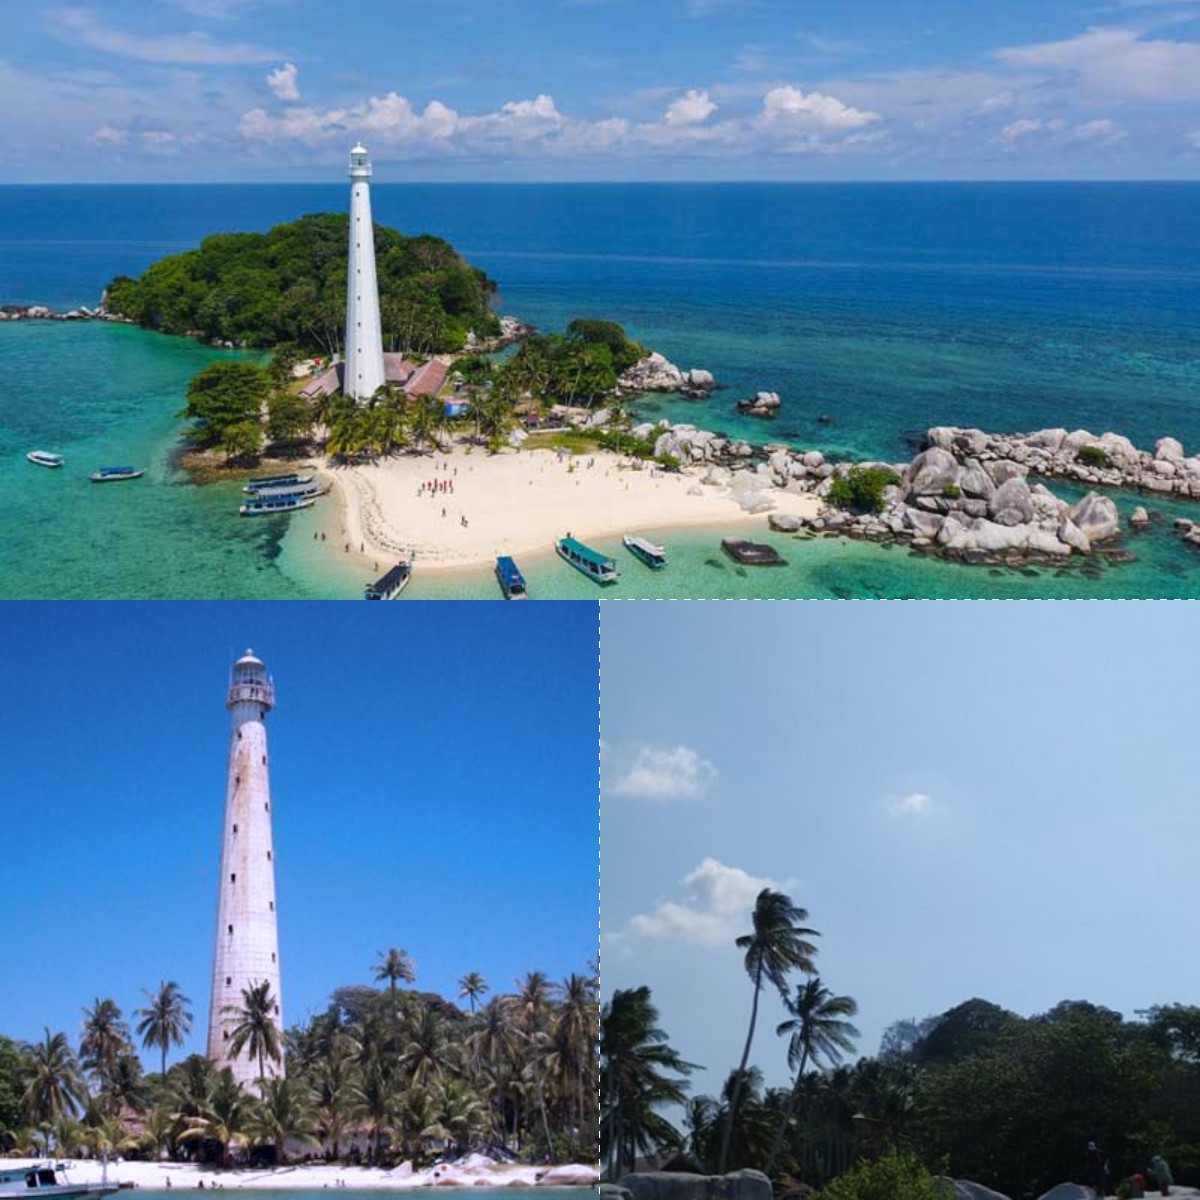 Destinasi Memukau Wisata Bangka Pulau Belitung, Bak Surga Tersembunyi